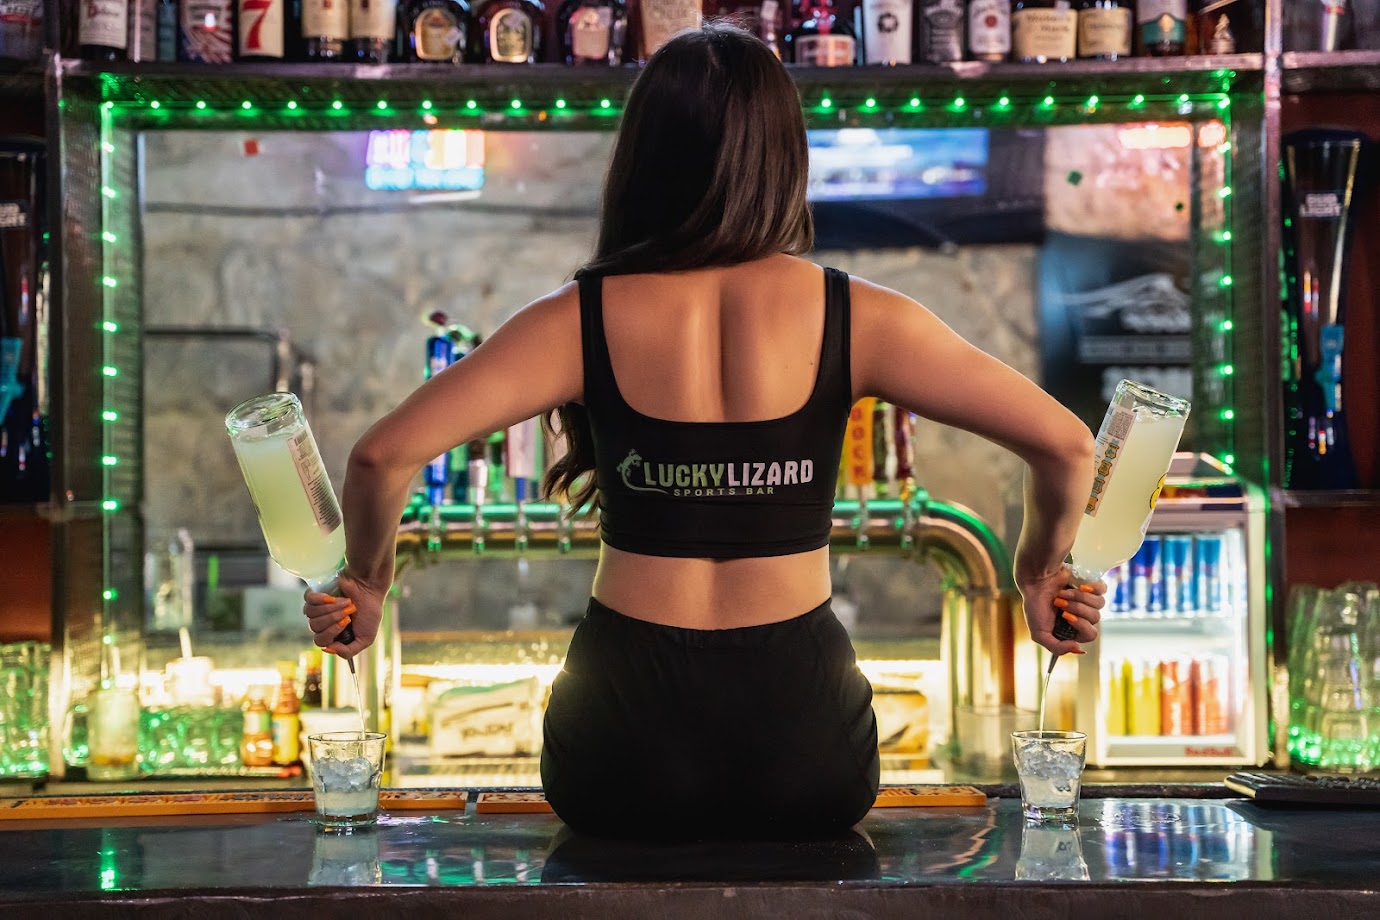 Lucky Lizard Sports Bar